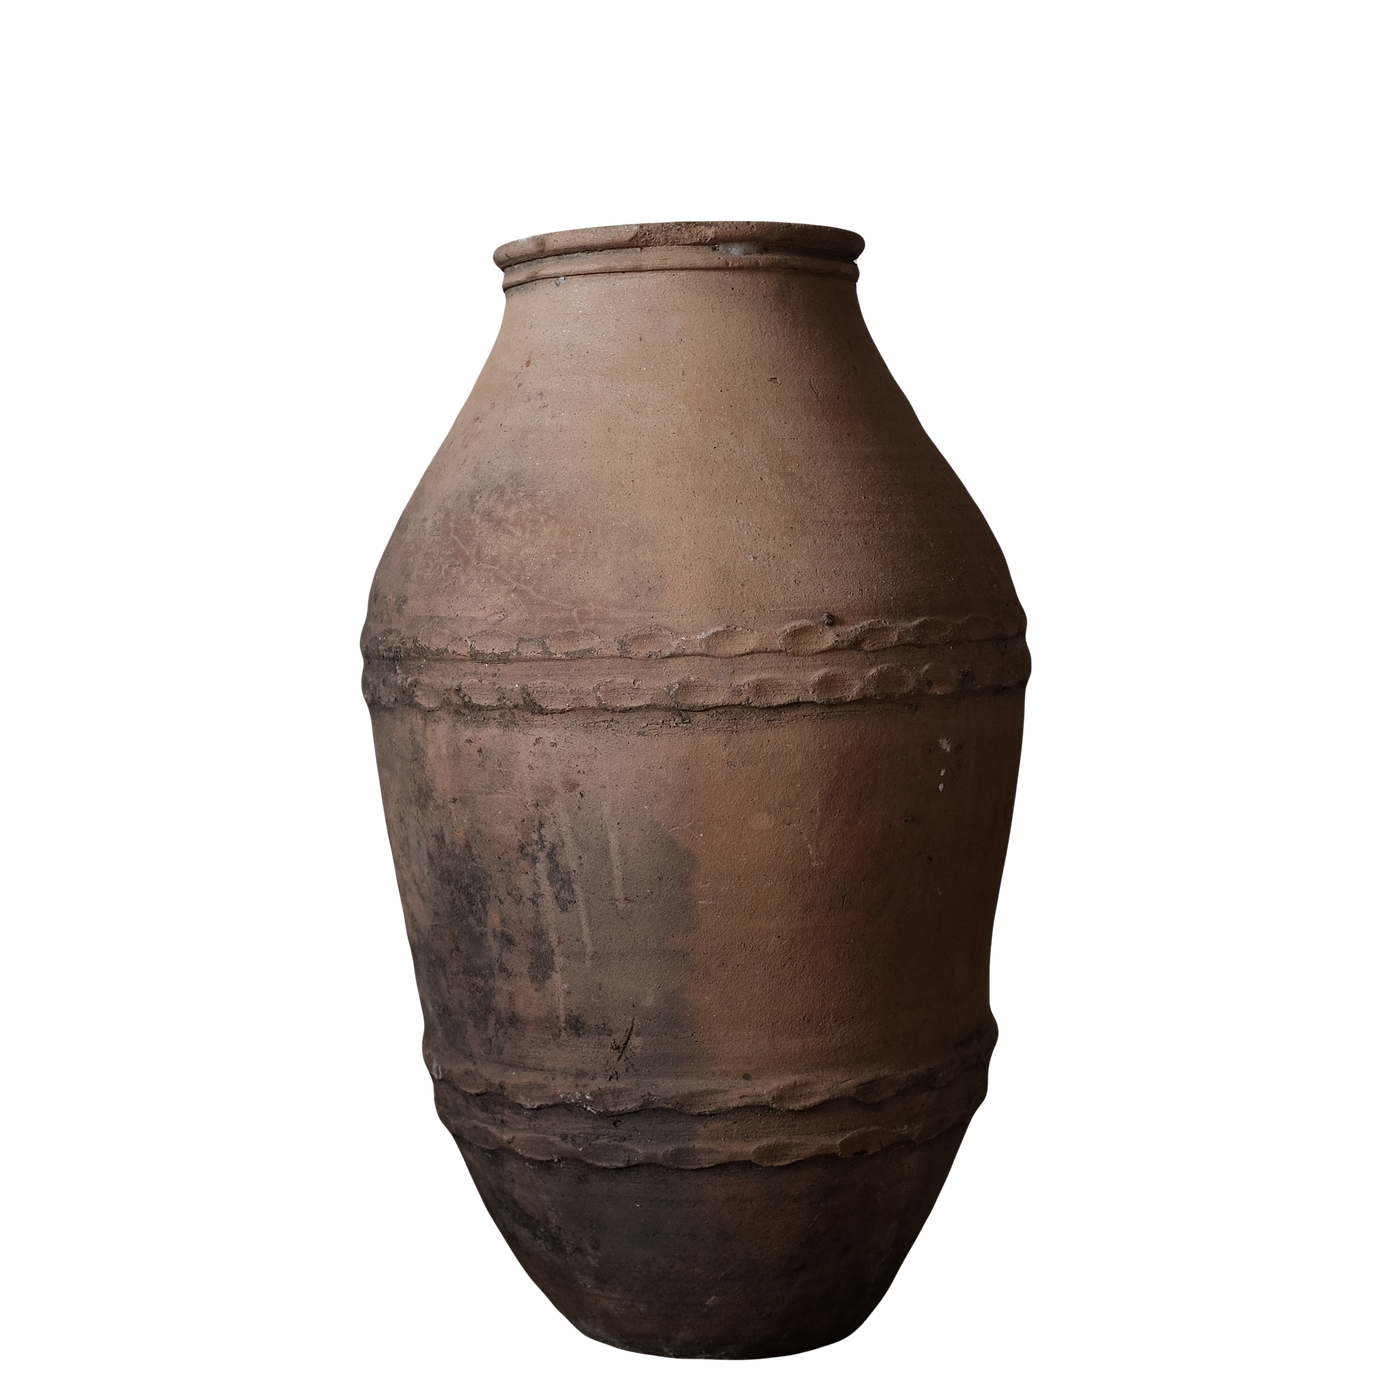 Zeytin - Ancienne jarre à huile turque en terre cuite